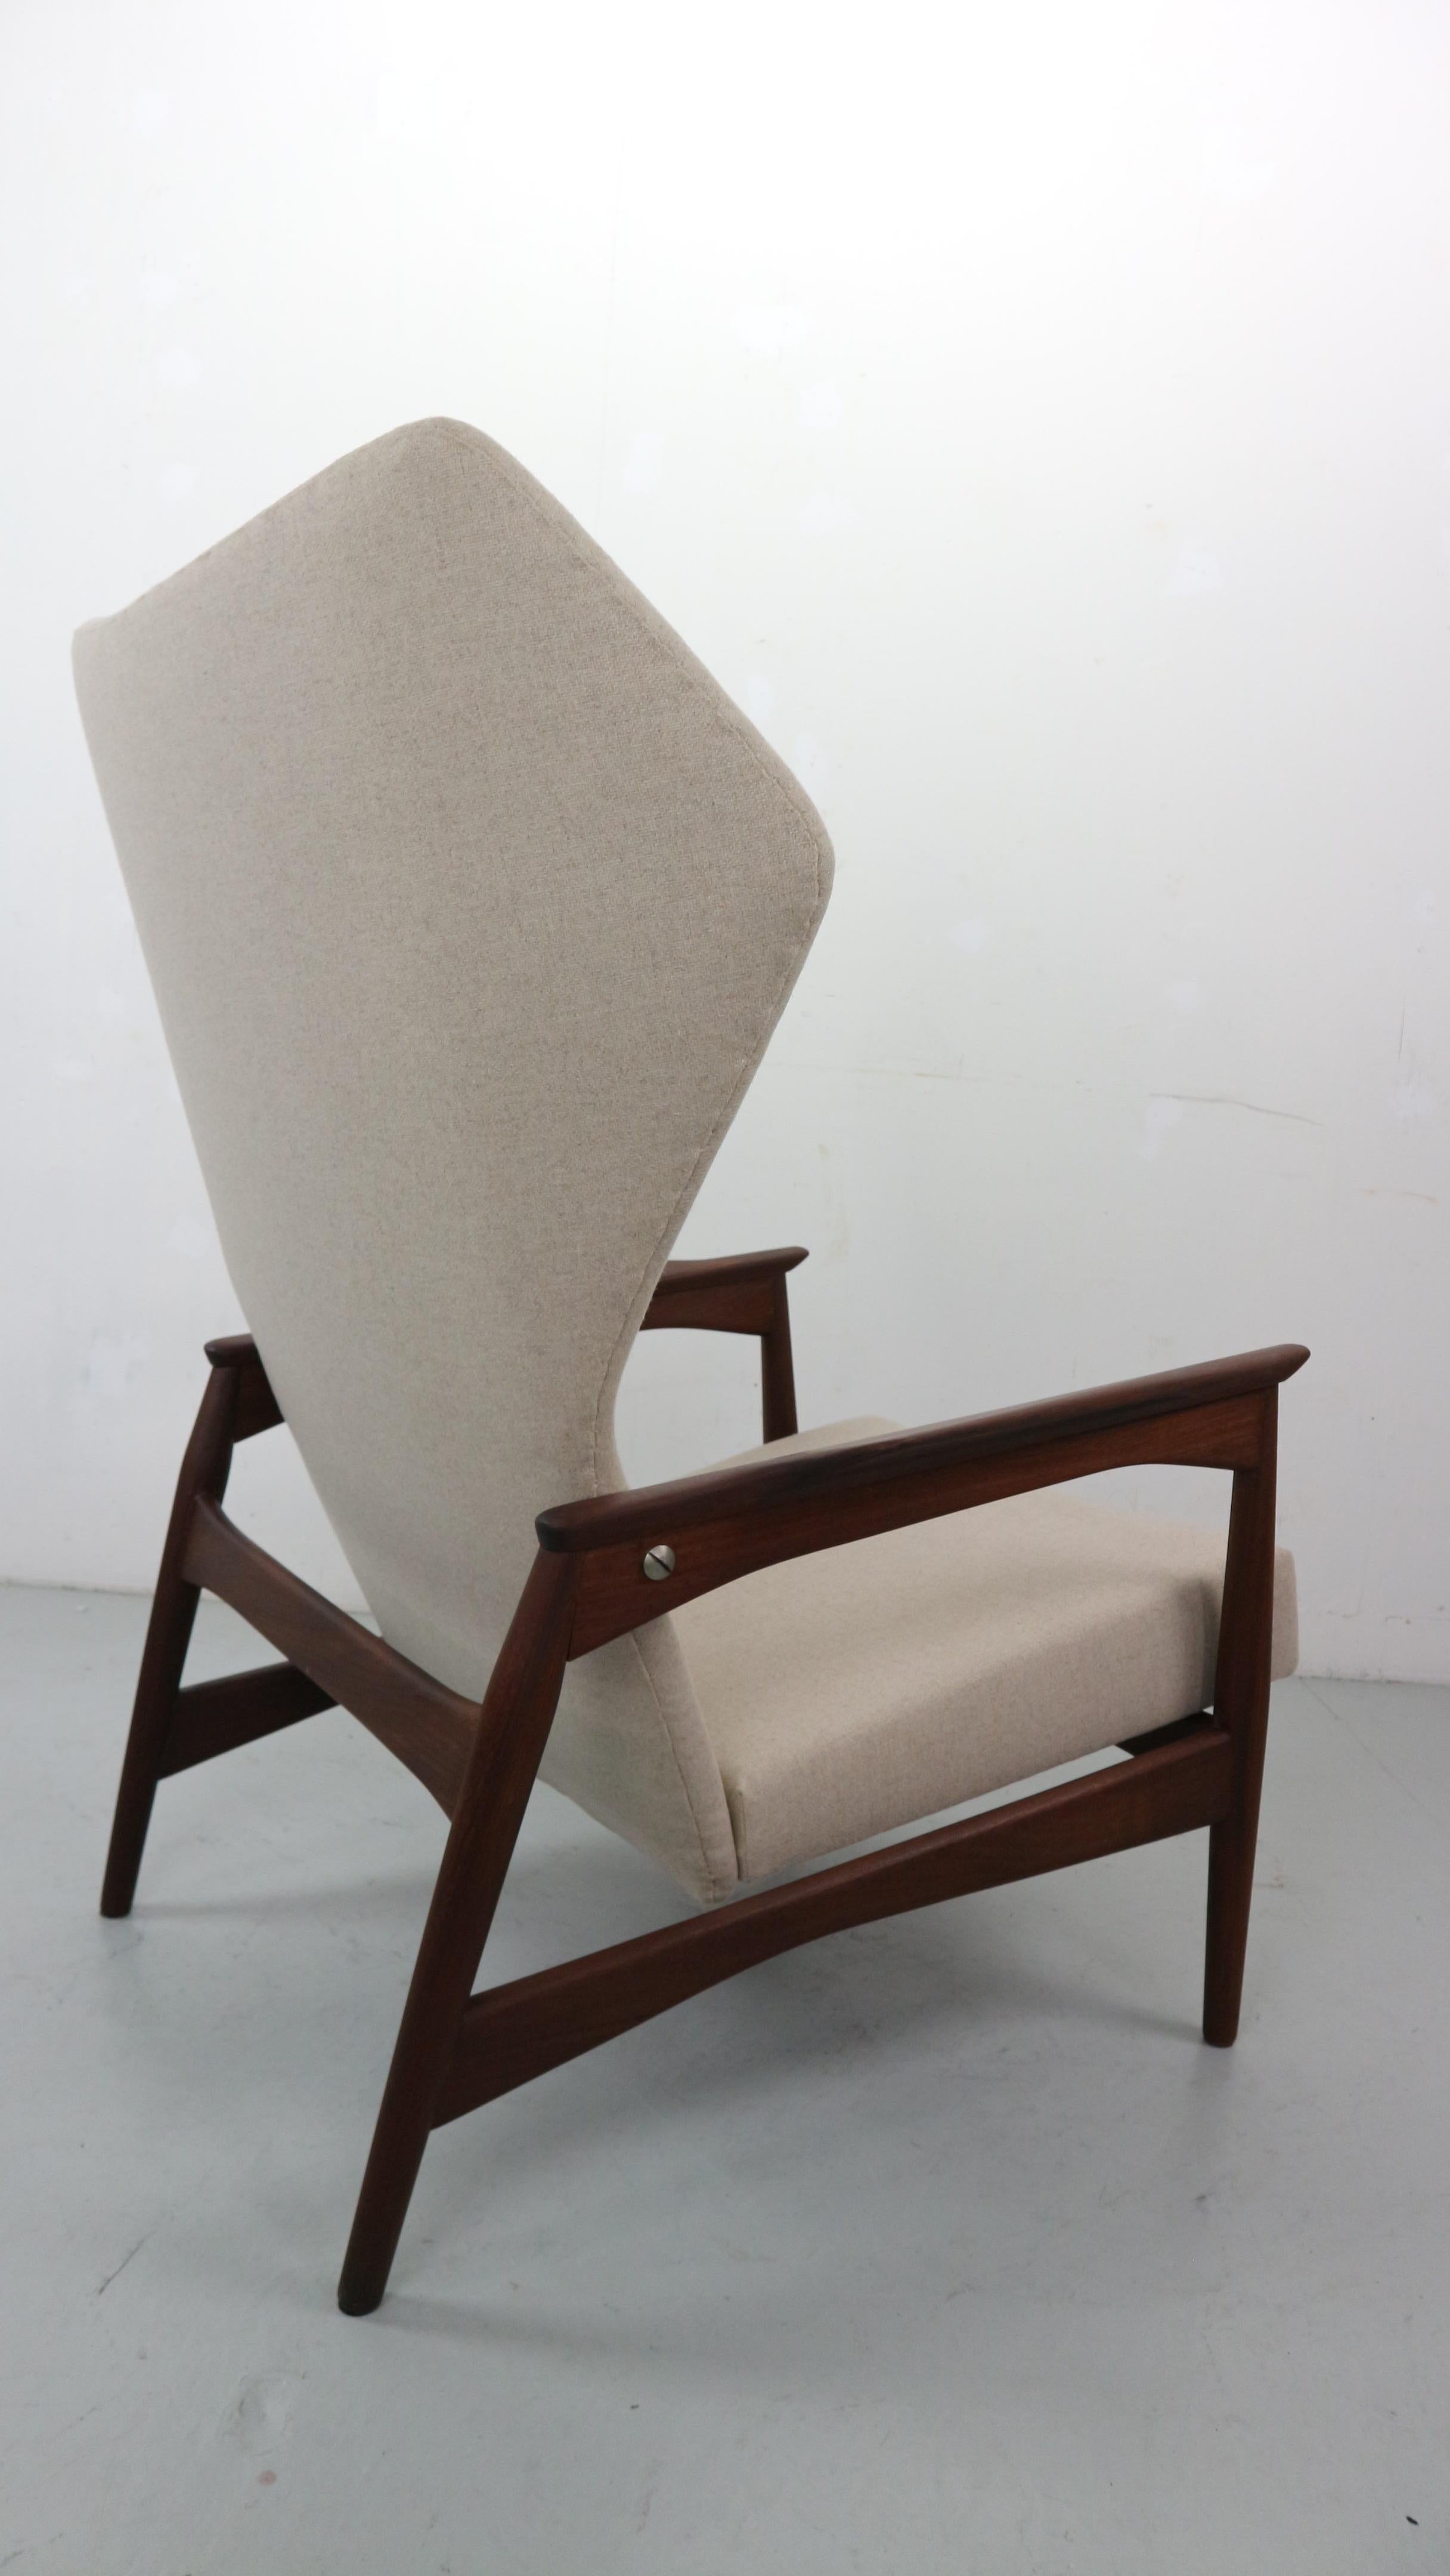 Sessel mit Rückenlehne, entworfen von Ib Kofod-Larsen im Jahr 1954. Der Stuhl ist neigbar und kann in drei Positionen eingestellt werden, wie auf den Bildern zu sehen. Die Stühle wurden in einem natürlichen Wollbeige neu gepolstert, eine perfekte